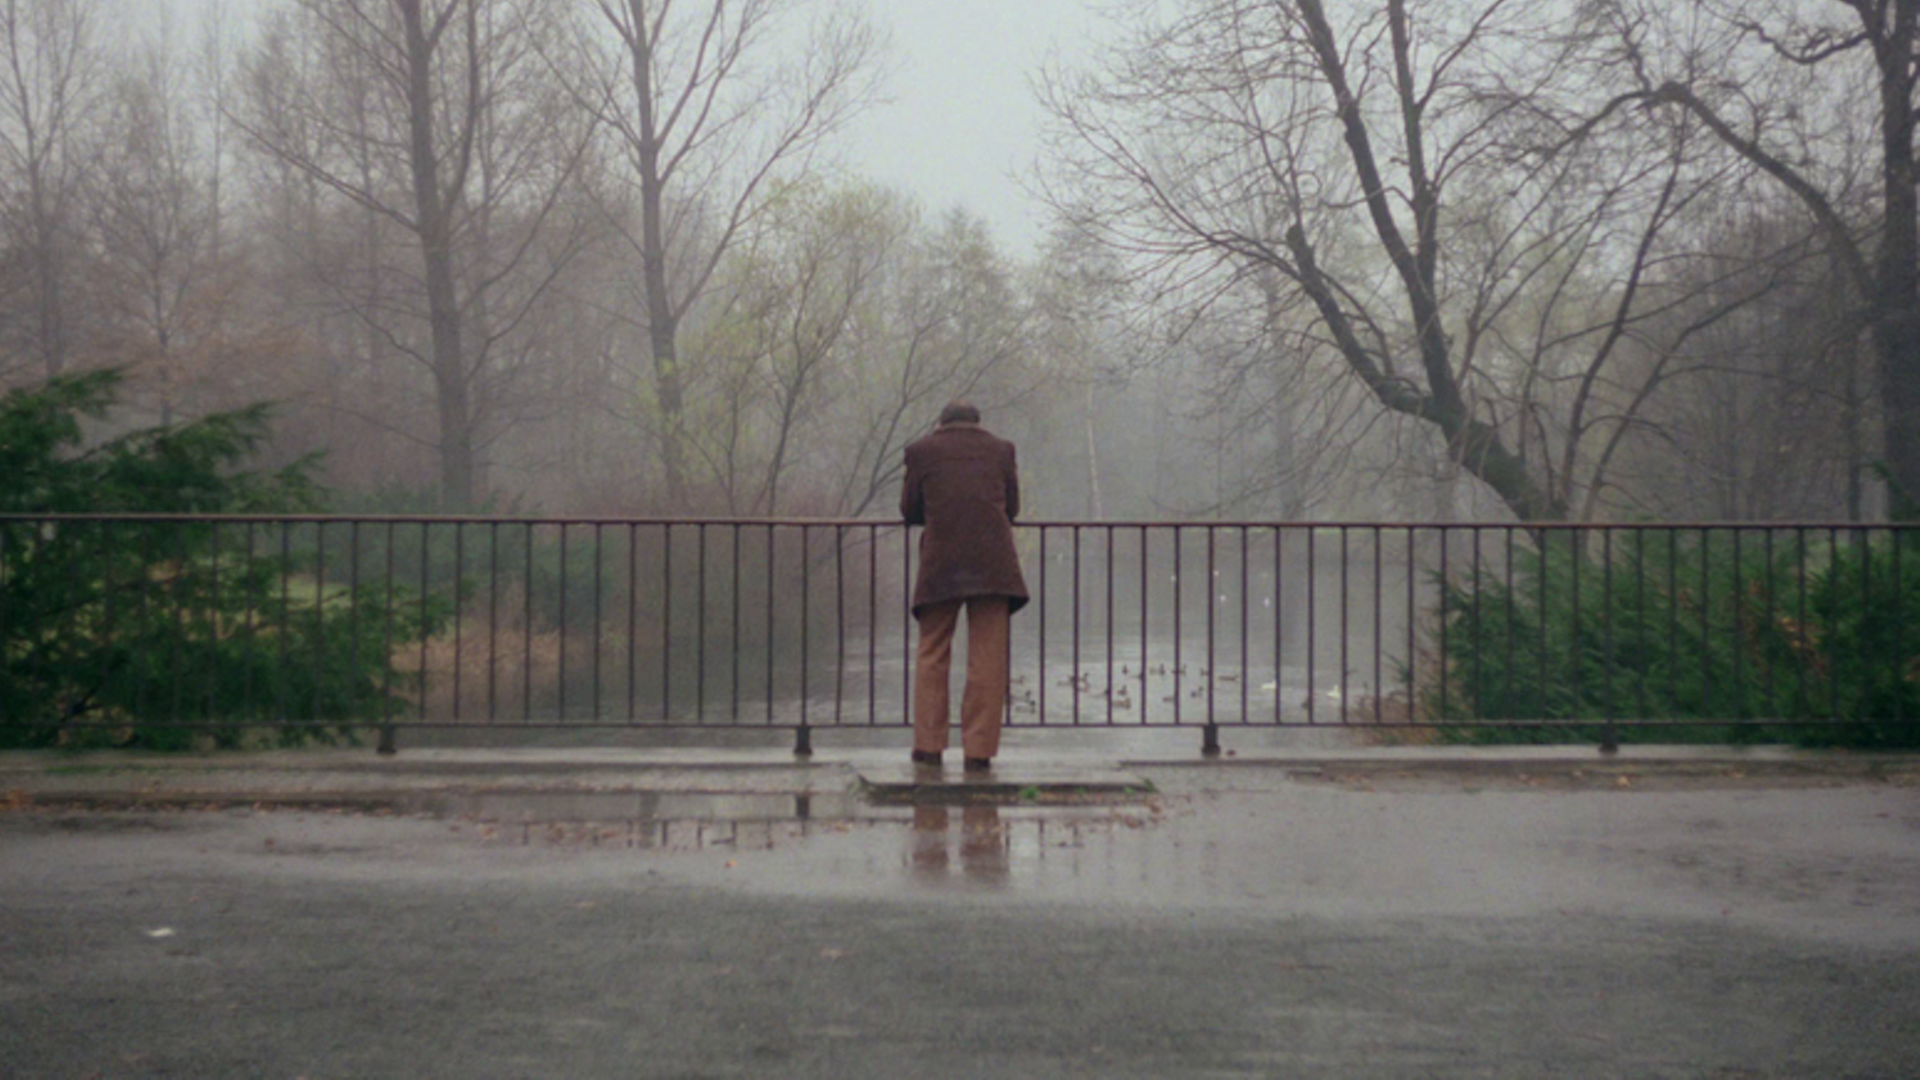 Im Still aus "Far From Home" wird von hinten gezeigt, wie ein Mann im Mantel an einem Brückengeländer steht und hinabschaut.